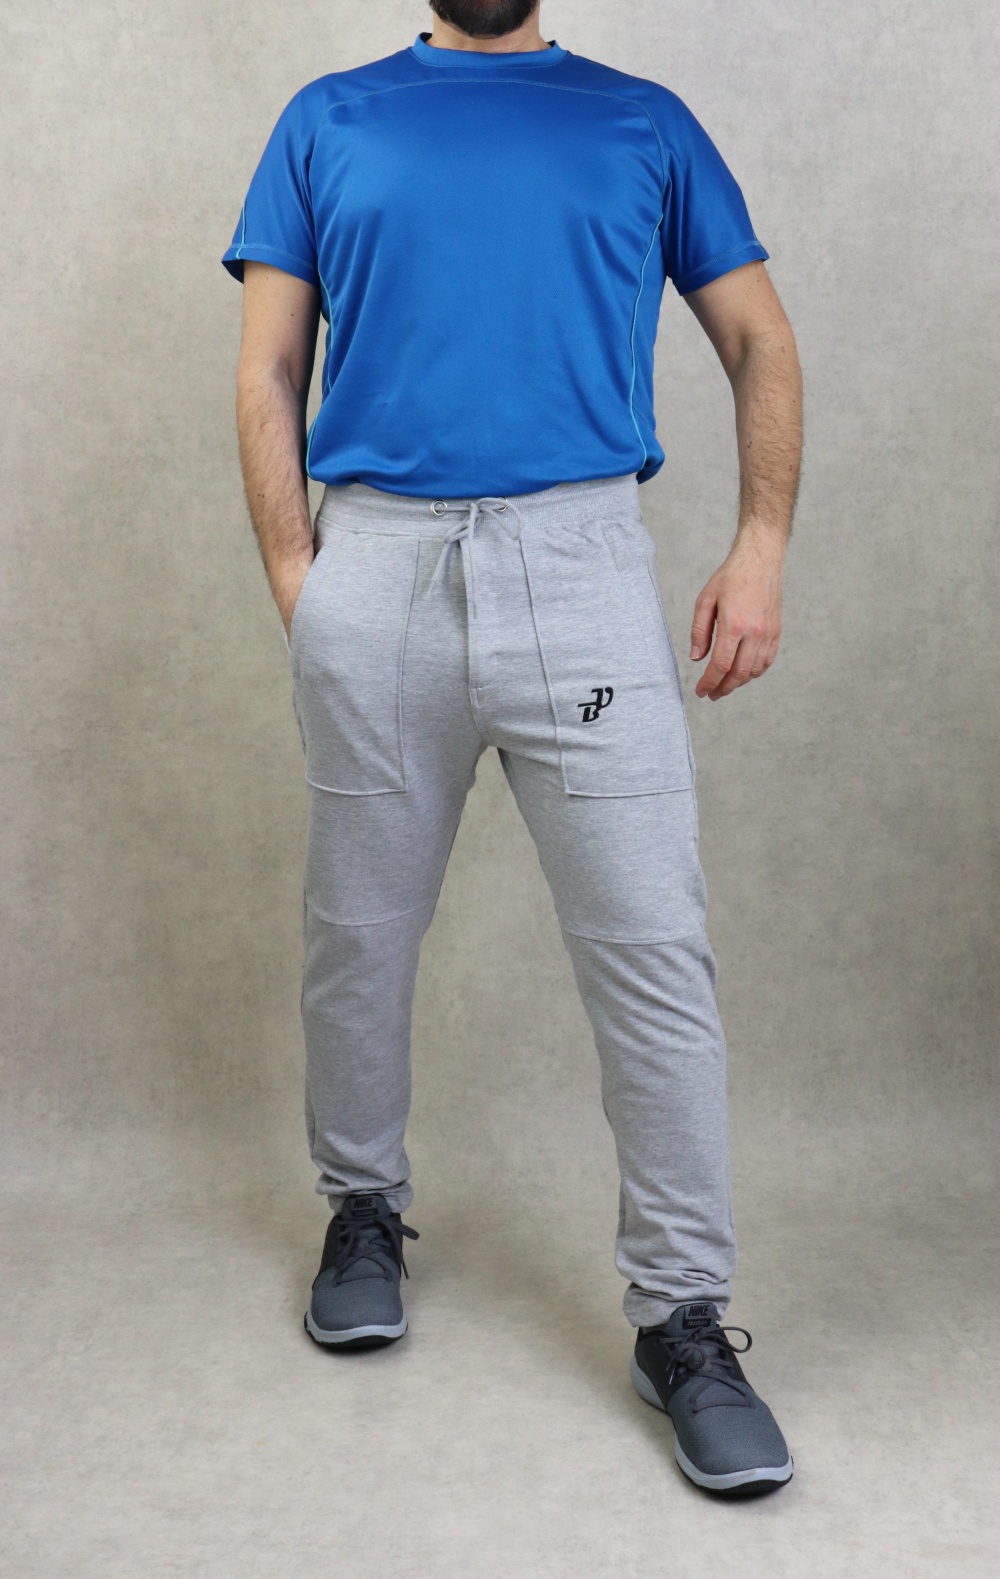 Pantalon jogging Sarouel léger pour homme poches zip blanches - Marque Best  Ummah - Couleur Bleu marine